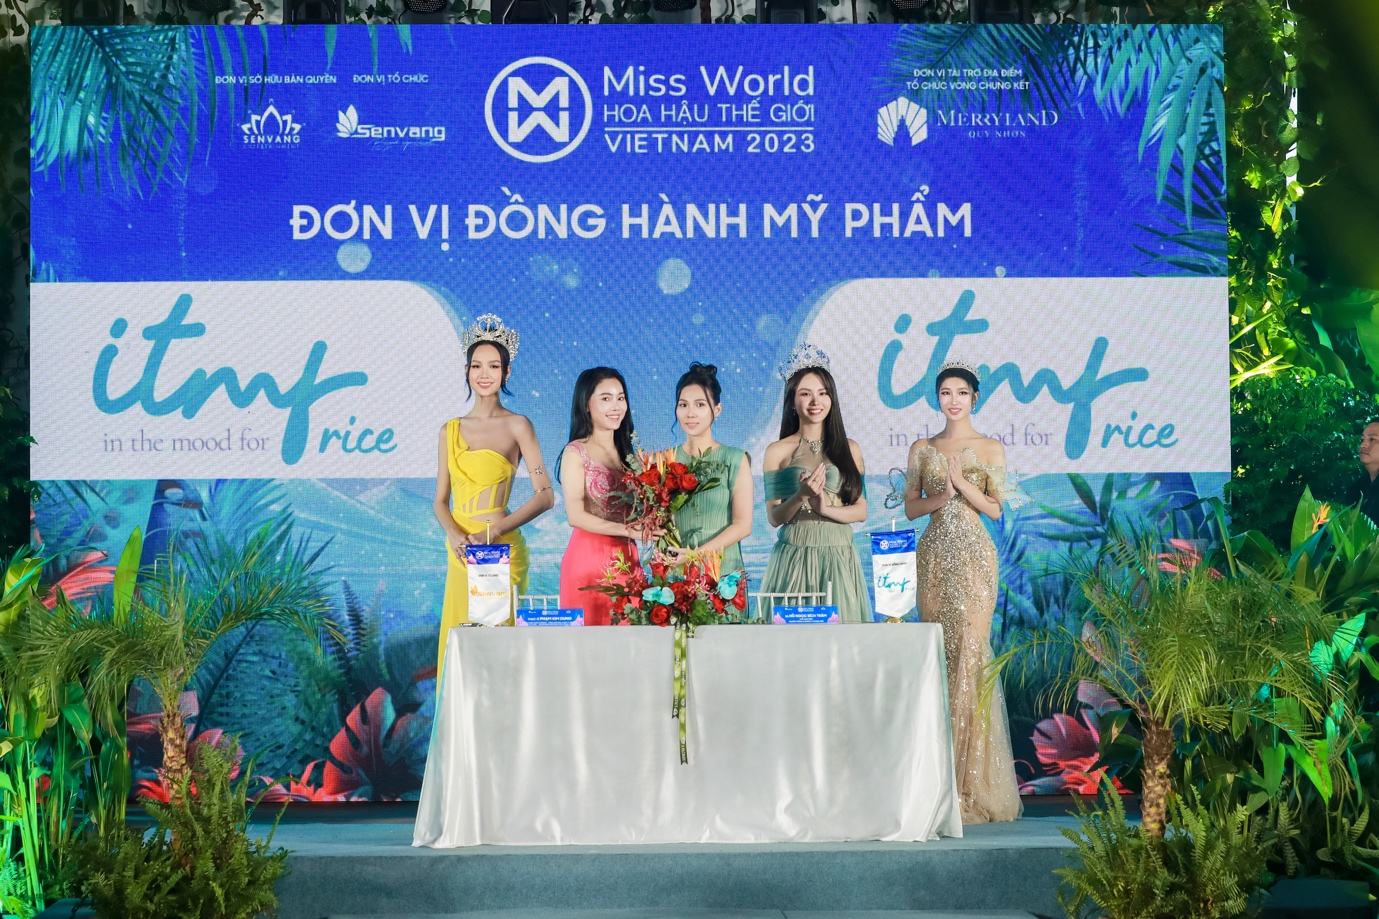 Mỹ phẩm thuần dưỡng ITMF đồng hành cùng Miss World Việt Nam 2023 - Ảnh 4.